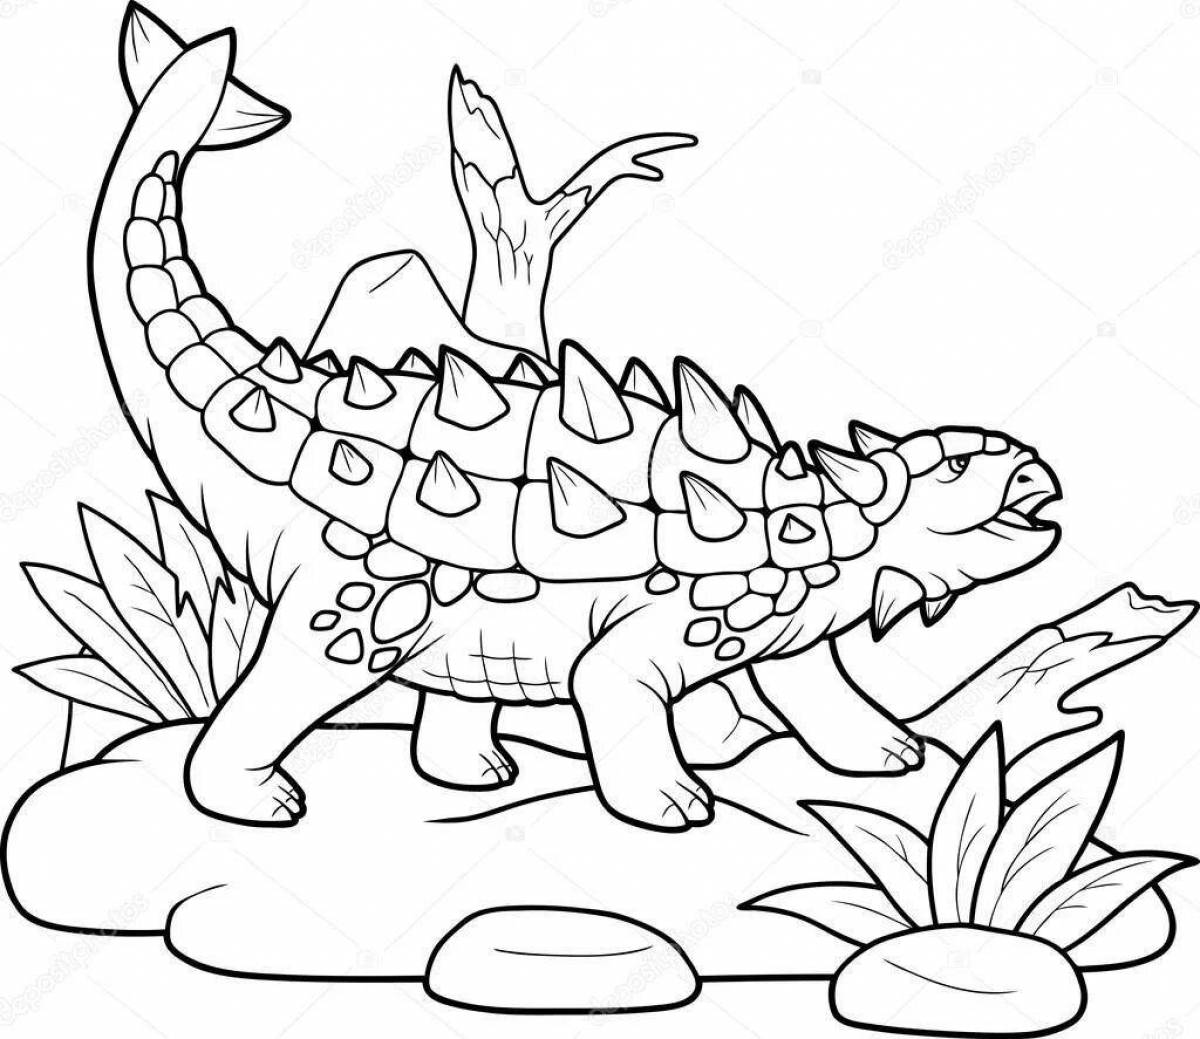 A fun Ankylosaurus coloring book for kids